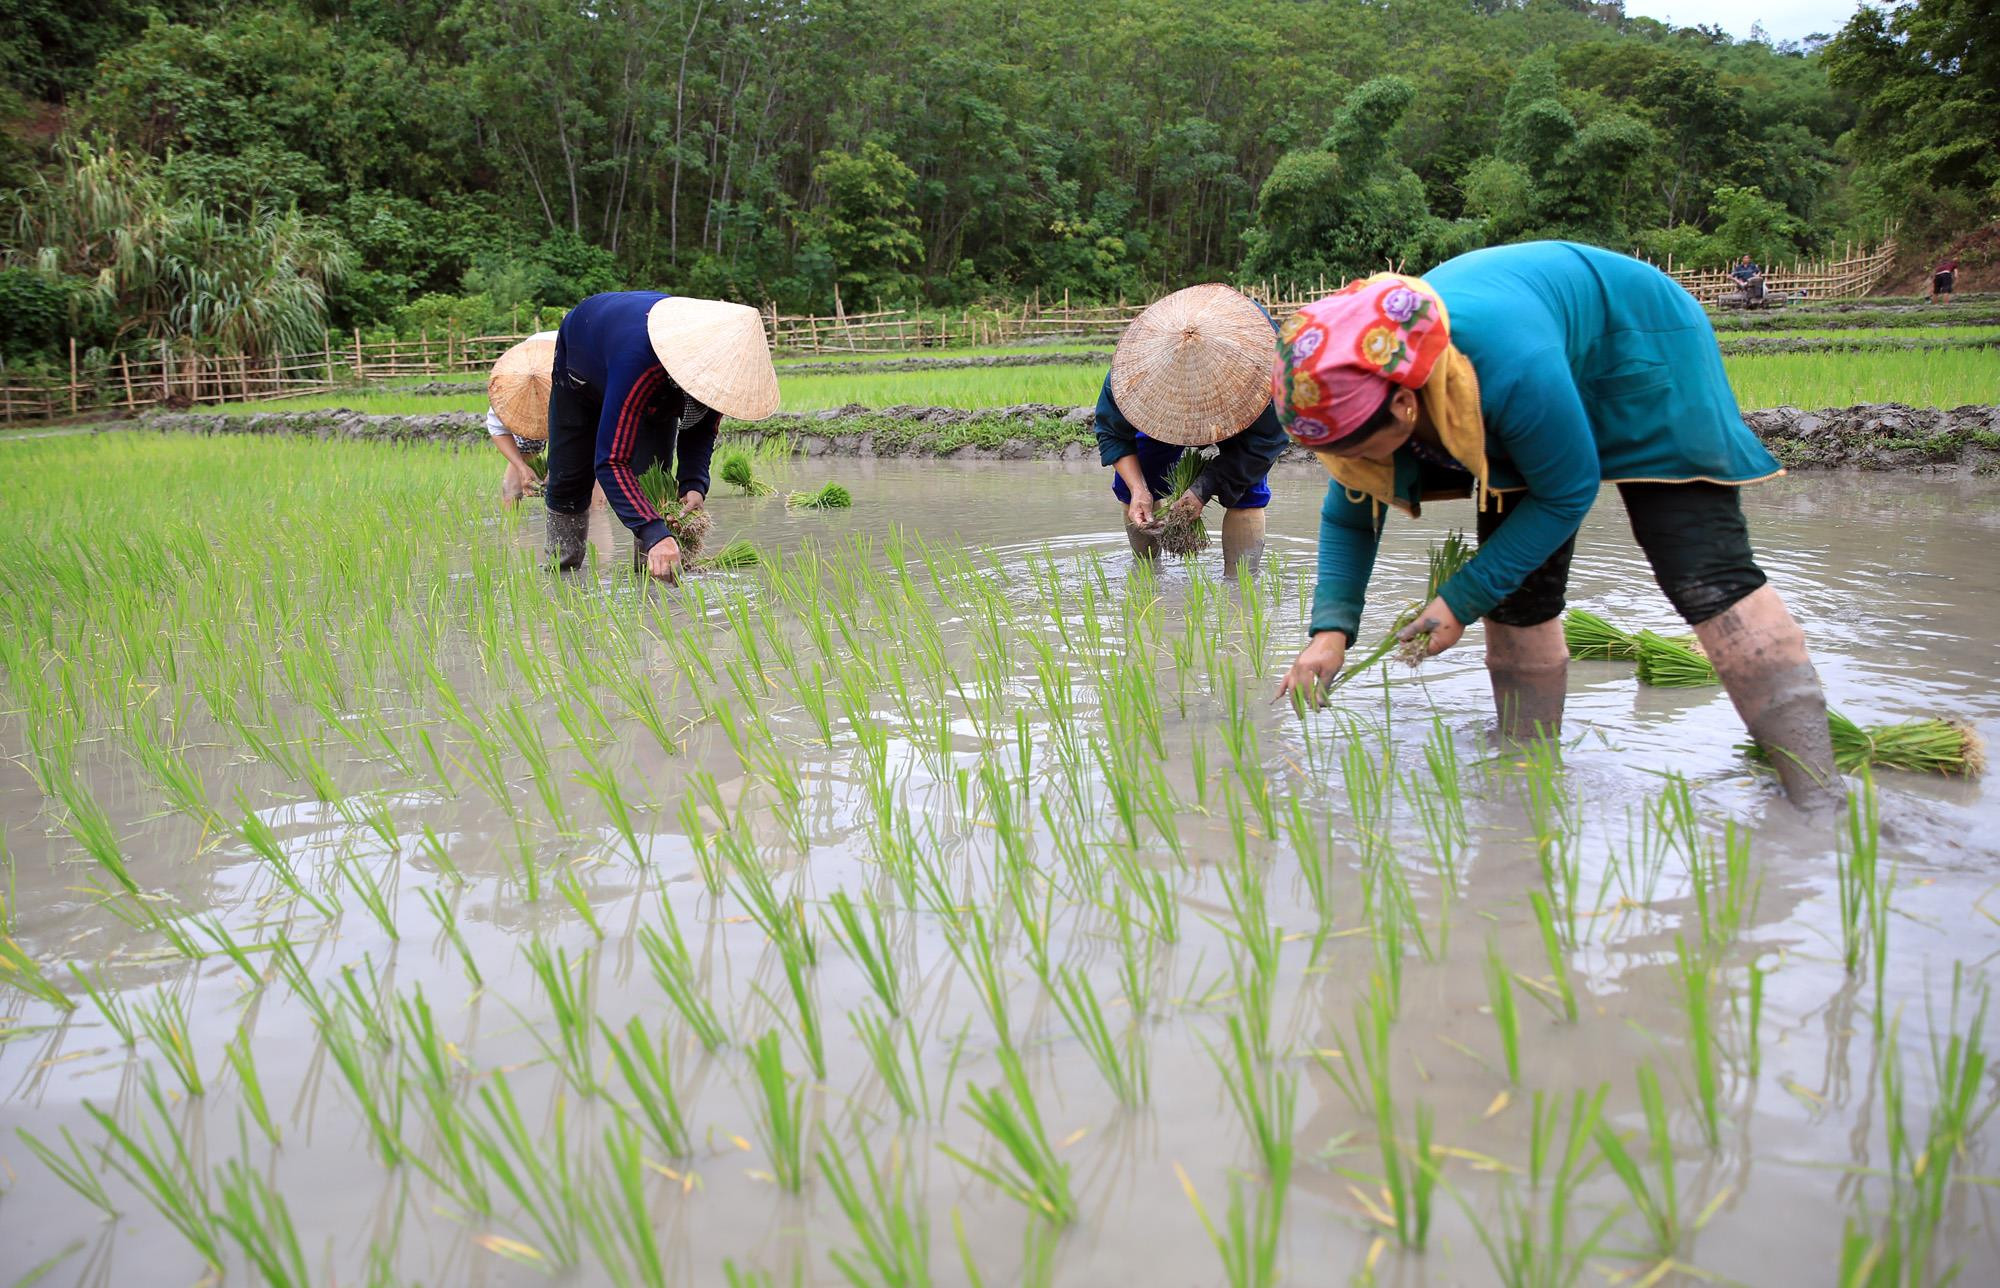 Vụ hè thu 2019, người dân huyện Tương Dương sử dụng những loại giống như: Sông Lam 9, Thiêu ưu, Nghệ An 2... Đây là những giống lúa mang lại năng suất cao, phù hợp với thời tiết và thổ nhưỡng của huyện miền núi này. Ảnh: Hồ Phương